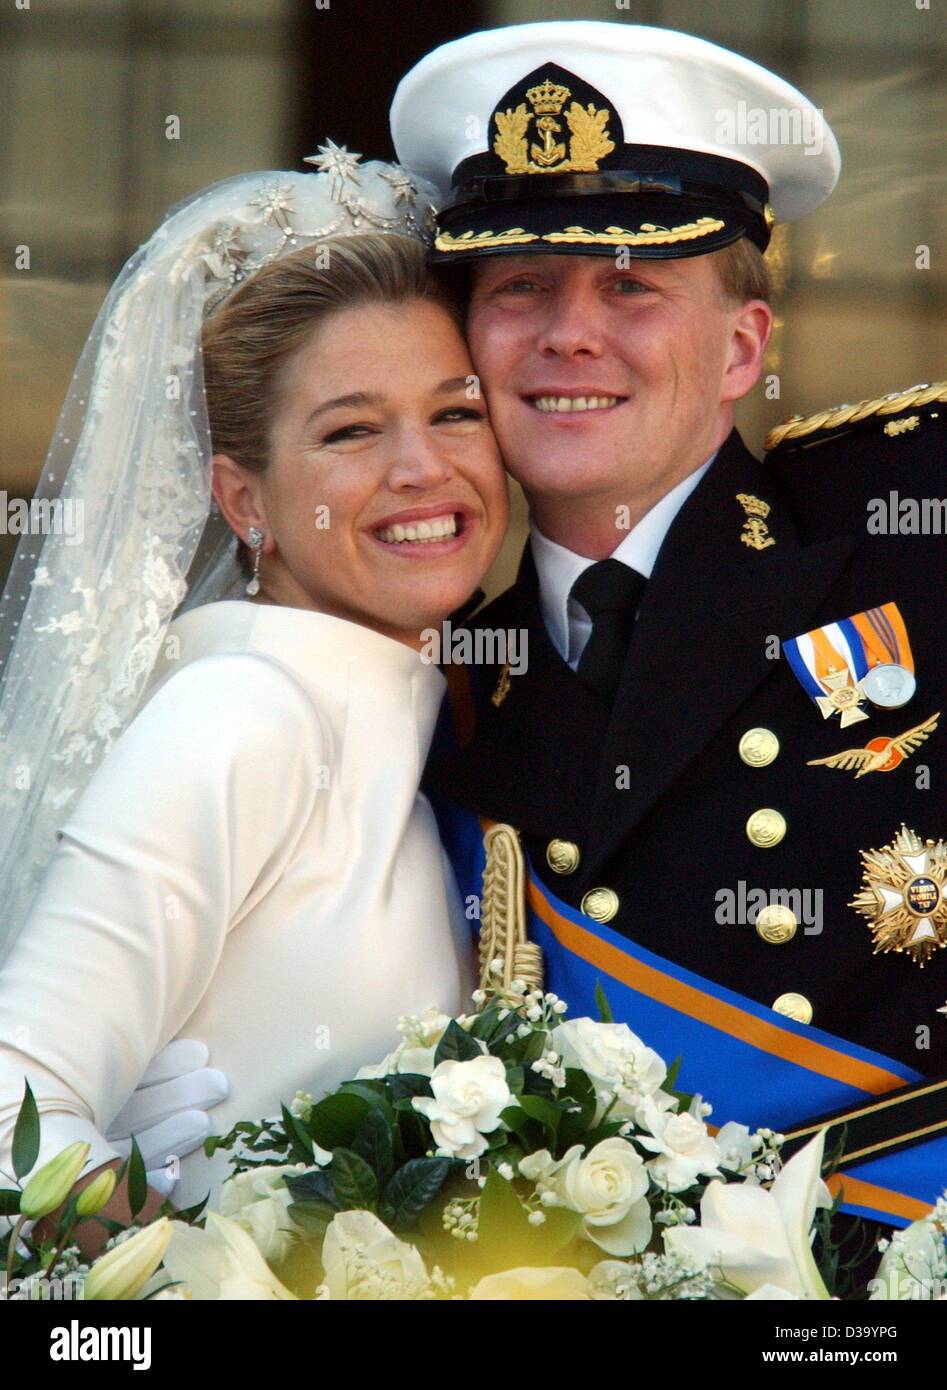 (Dpa) - königliche Hochzeit in Amsterdam: niederländischen Kronprinzen Willem-Alexander und seine Frau Prinzessin Maxima Zorreguieta auf dem Balkon des königlichen Palastes in Amsterdam nach ihrer Trauung in der Kirche, 2. Februar 2002. Stockfoto